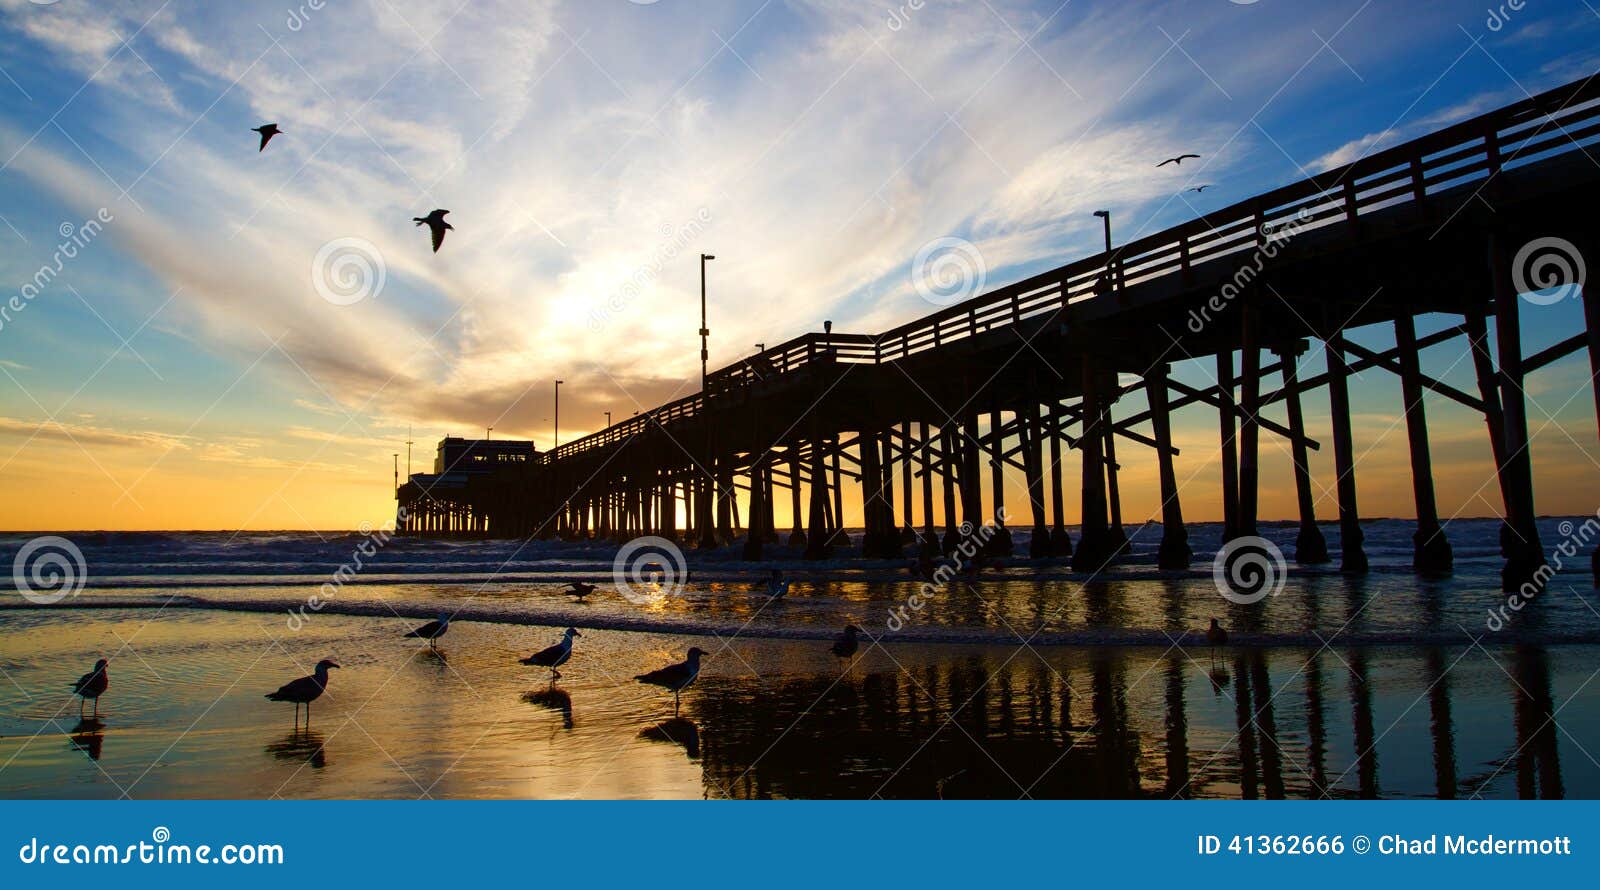 newport beach california pier at sunset